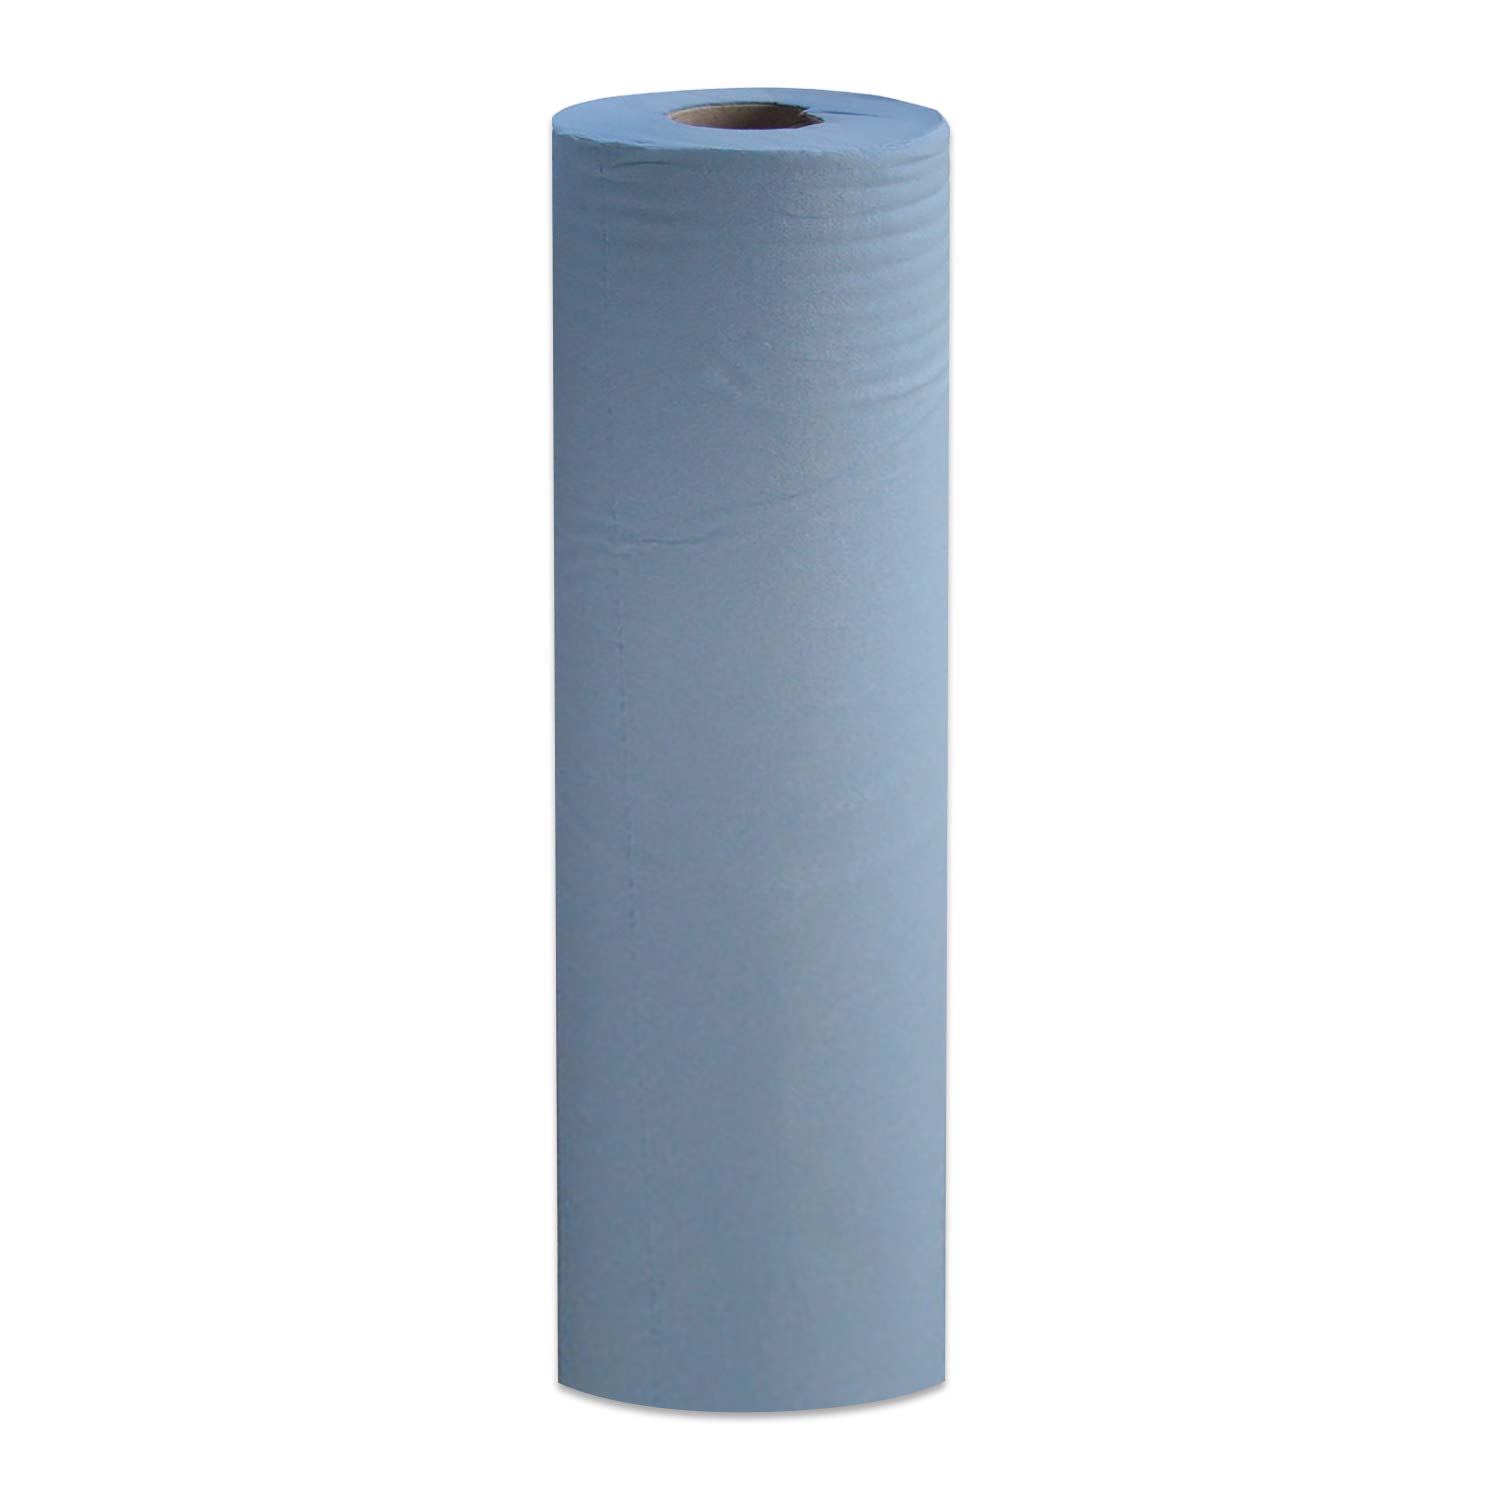 1 x Simply Direct Blaue 2-Lagige Hygiene Rollen. 48cm Breite, 50m Länge (19" x 164') Reinigungstücher/Tischtücher